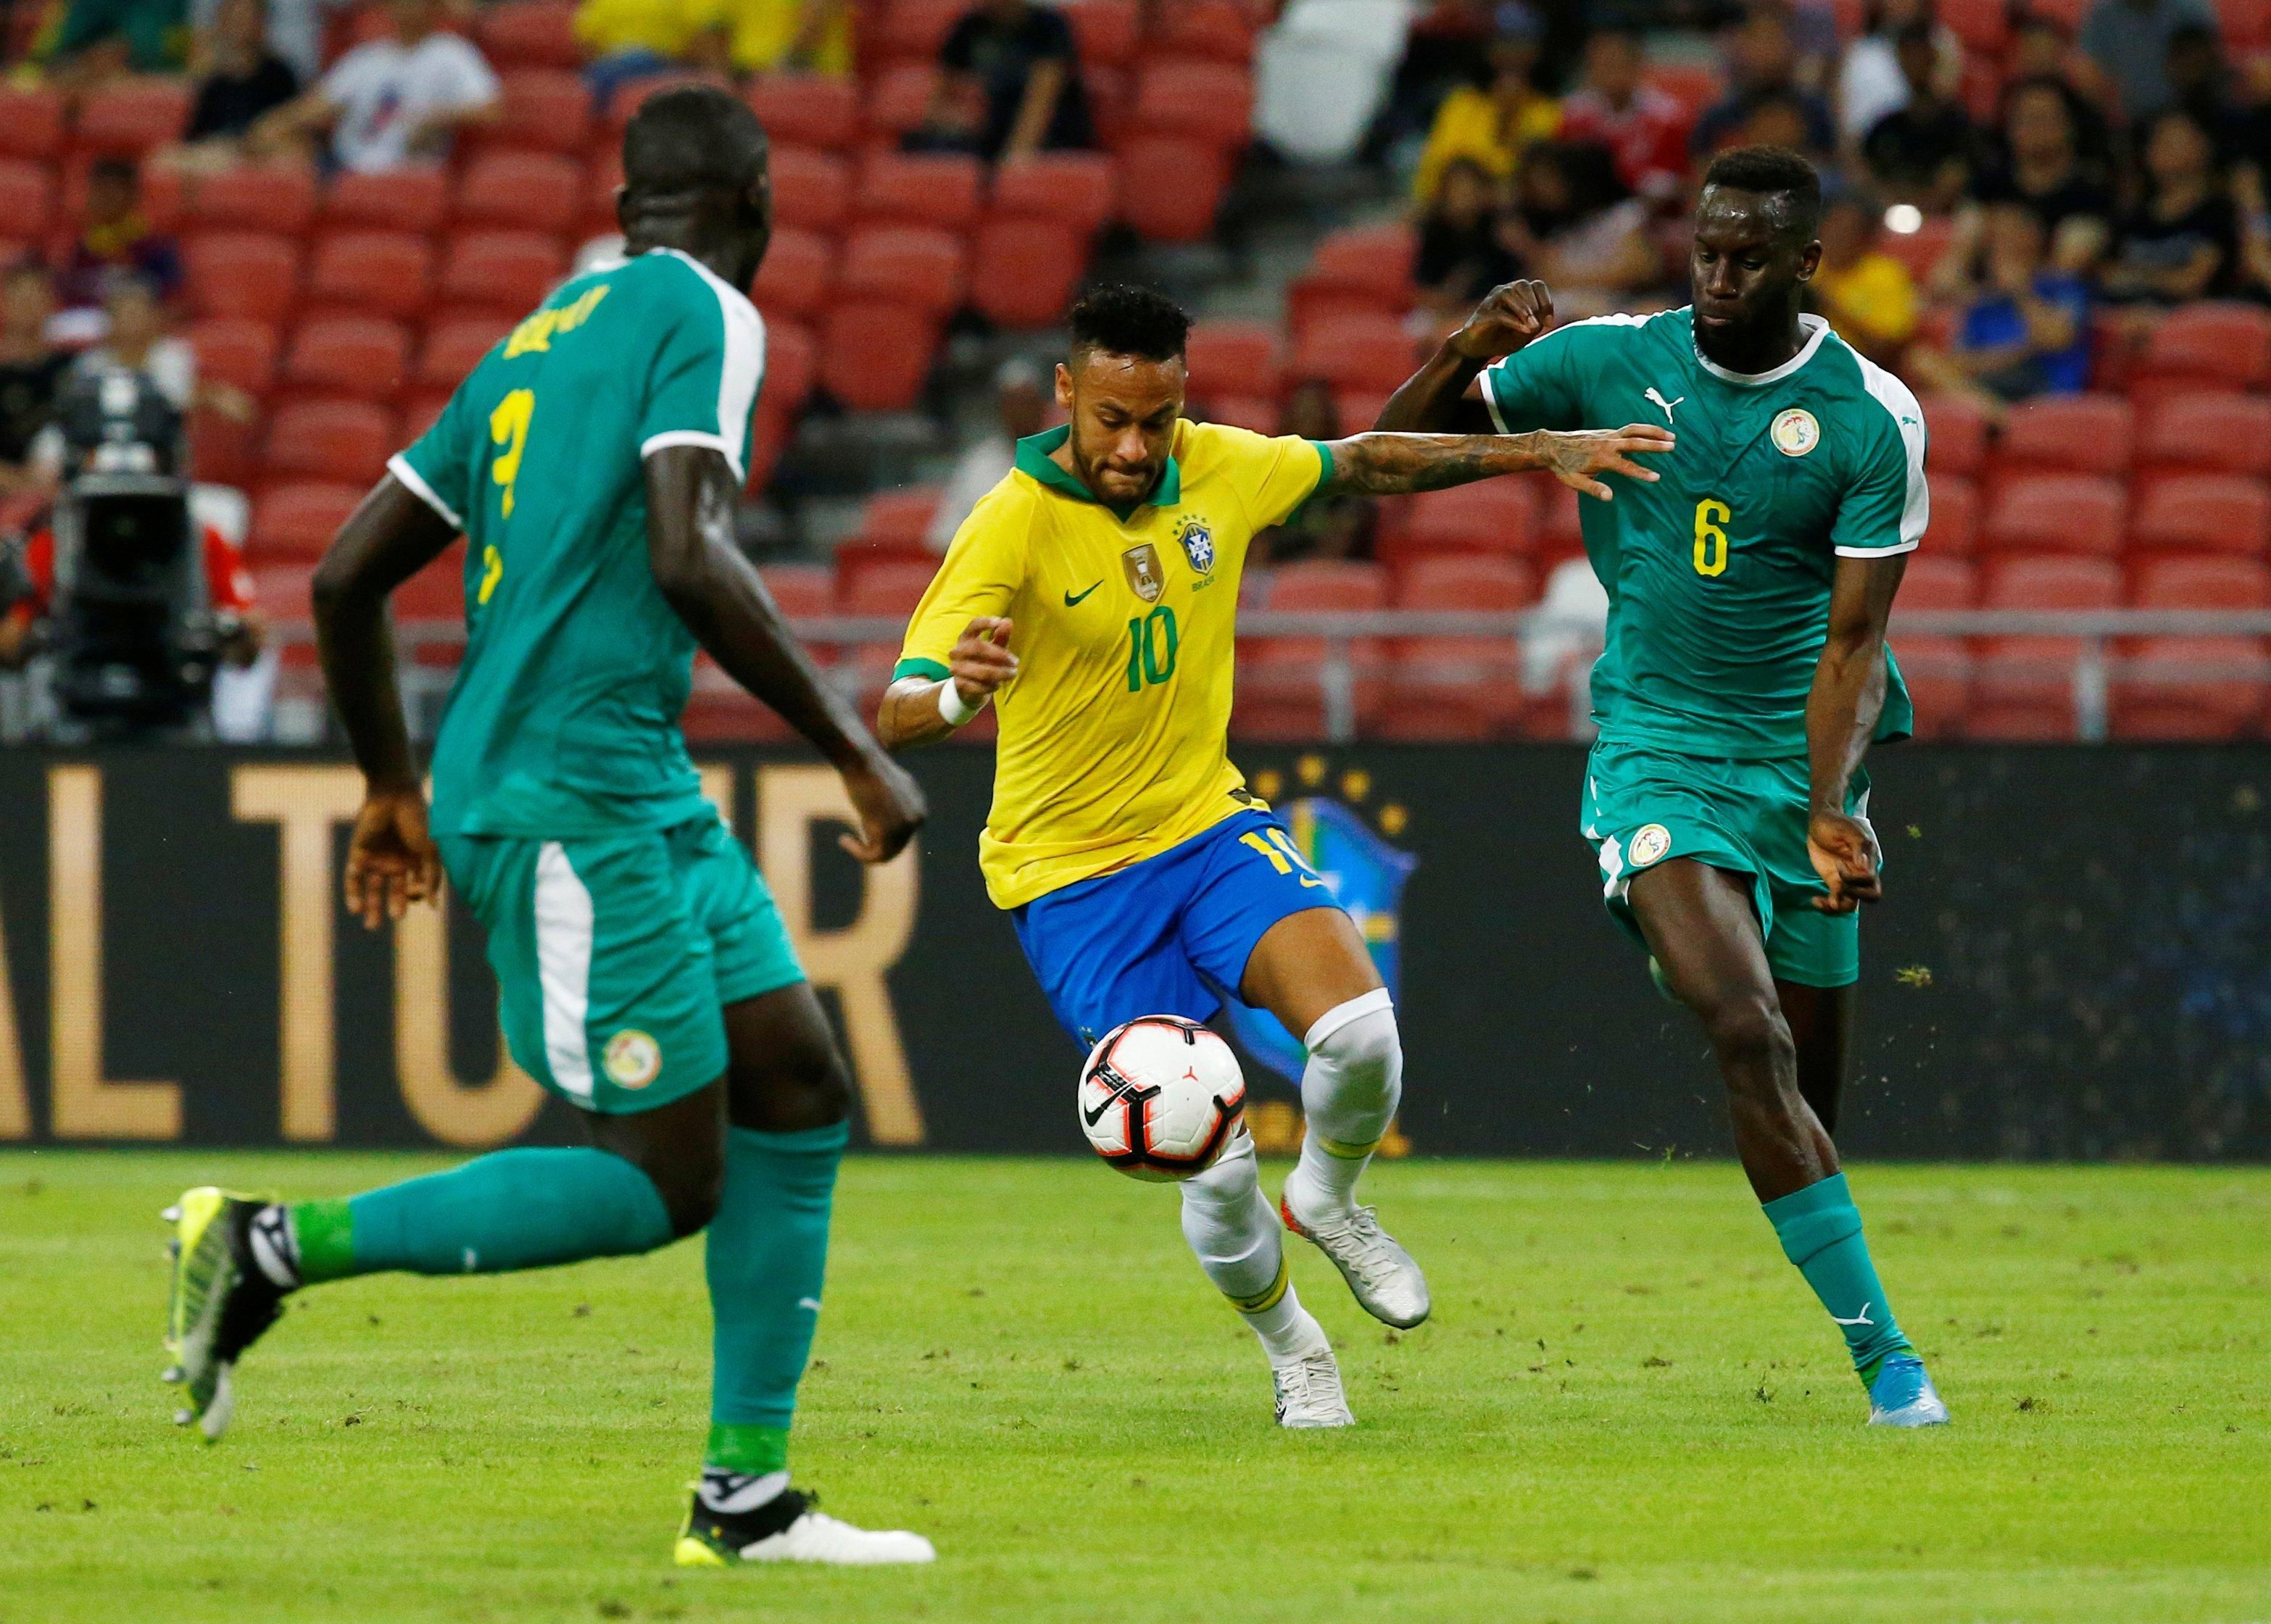 Бразилия в юбилейном матче Неймара не смогла победить Сенегал: видео